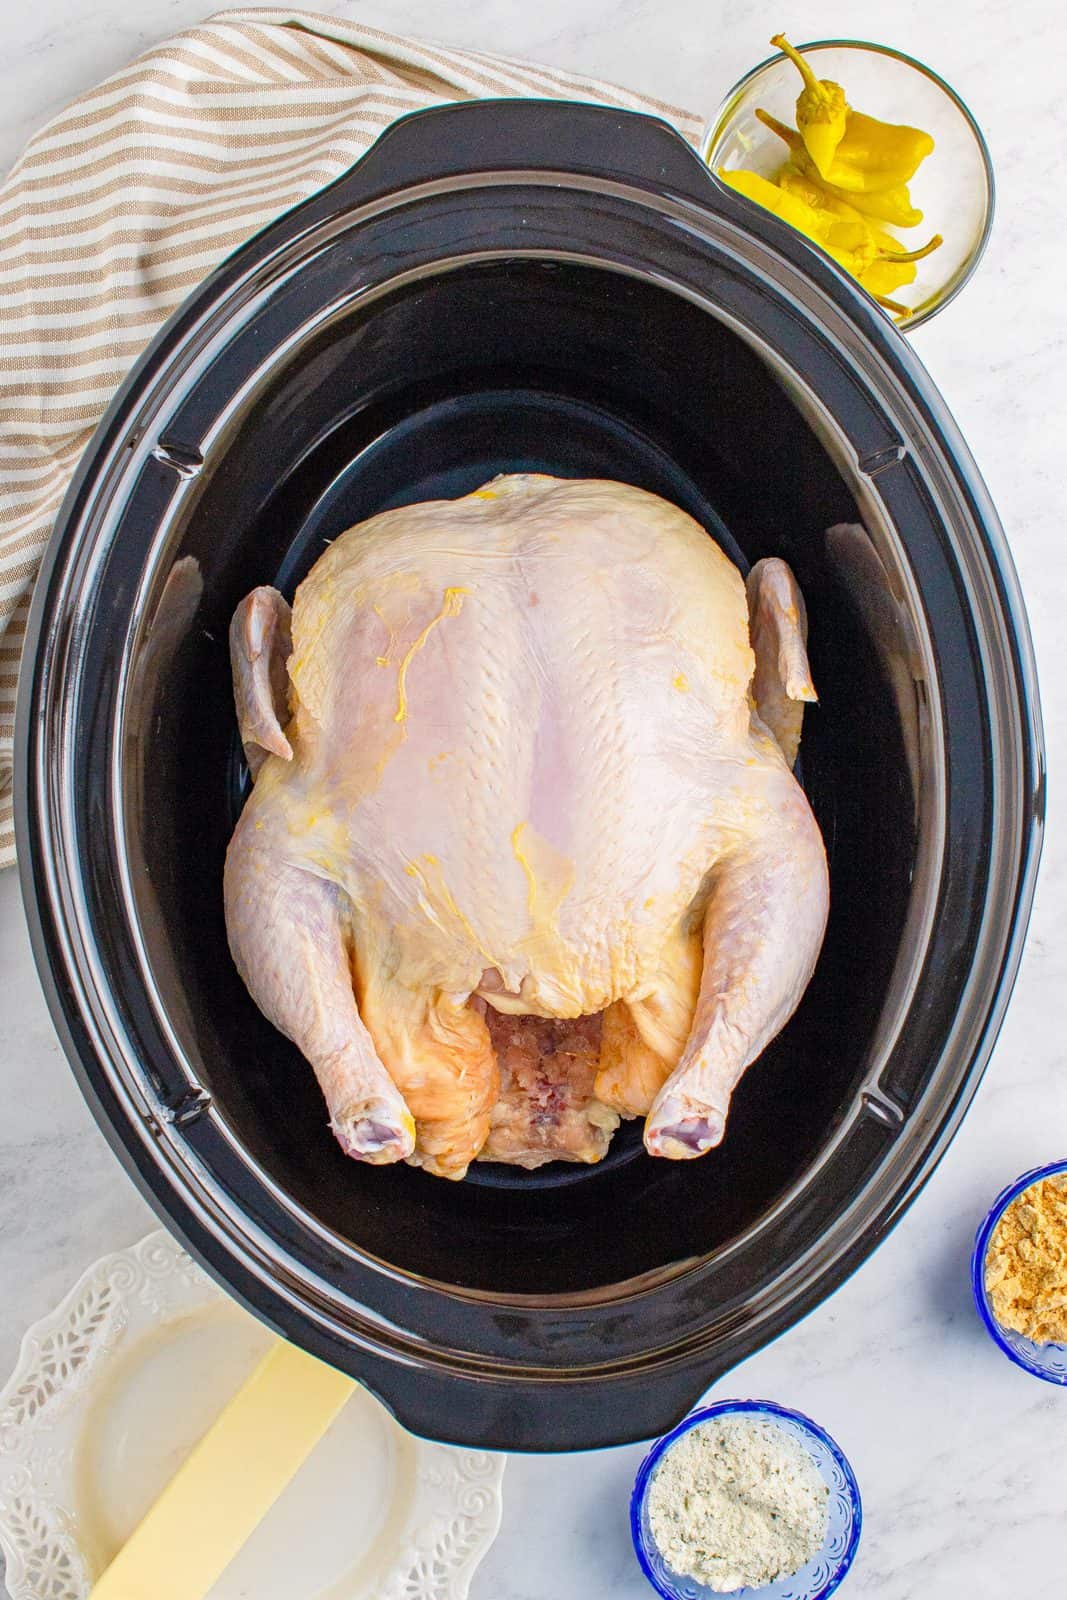 Whole chicken in crock pot.